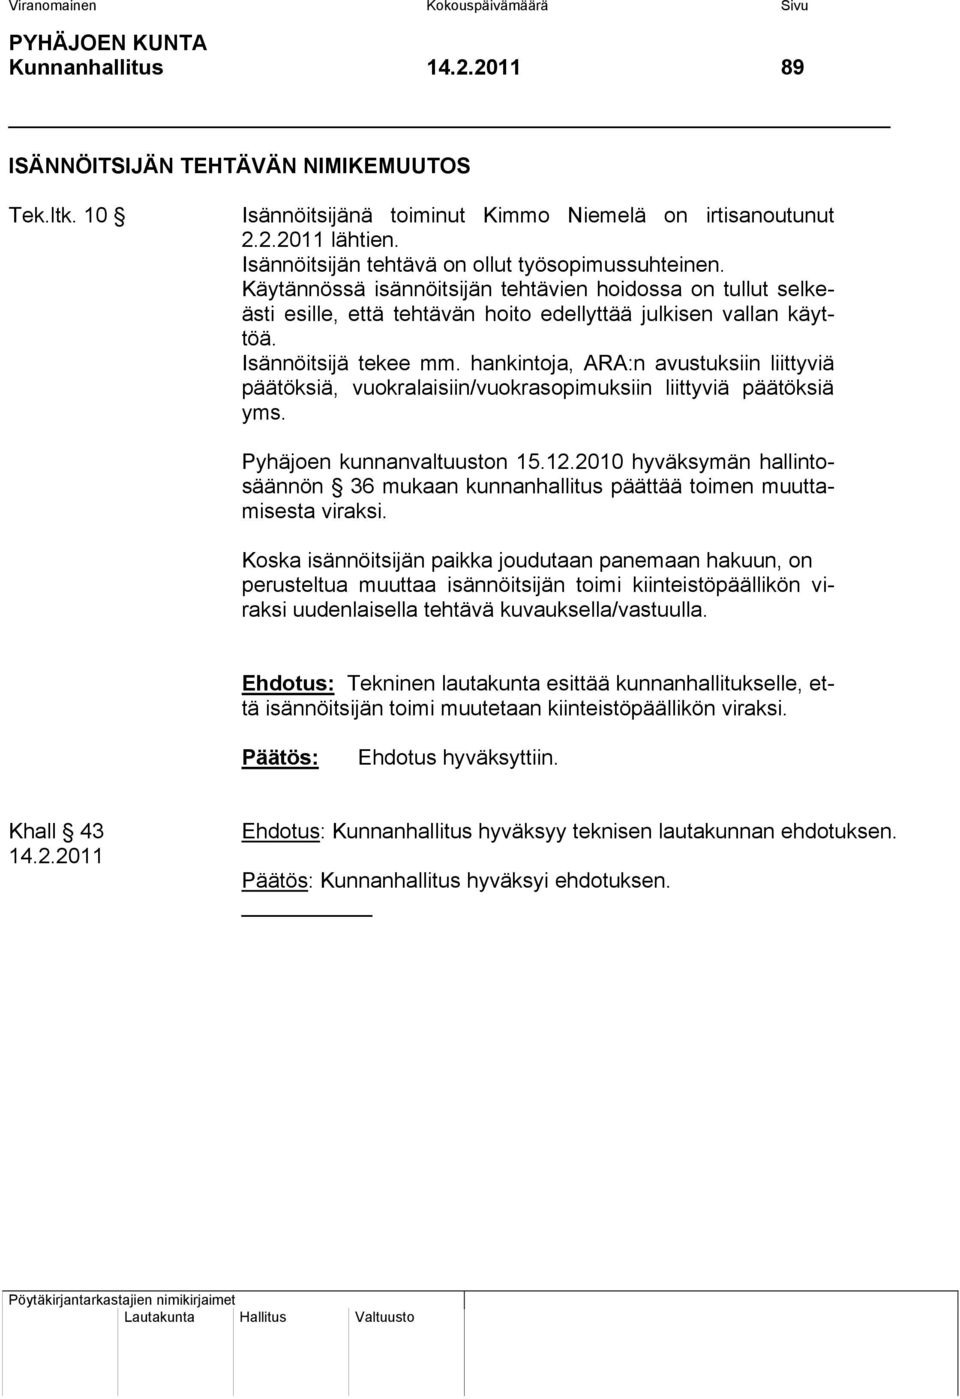 Isännöitsijä tekee mm. hankintoja, ARA:n avustuksiin liittyviä päätöksiä, vuokralaisiin/vuokrasopimuksiin liittyviä päätöksiä yms. Pyhäjoen kunnanvaltuuston 15.12.